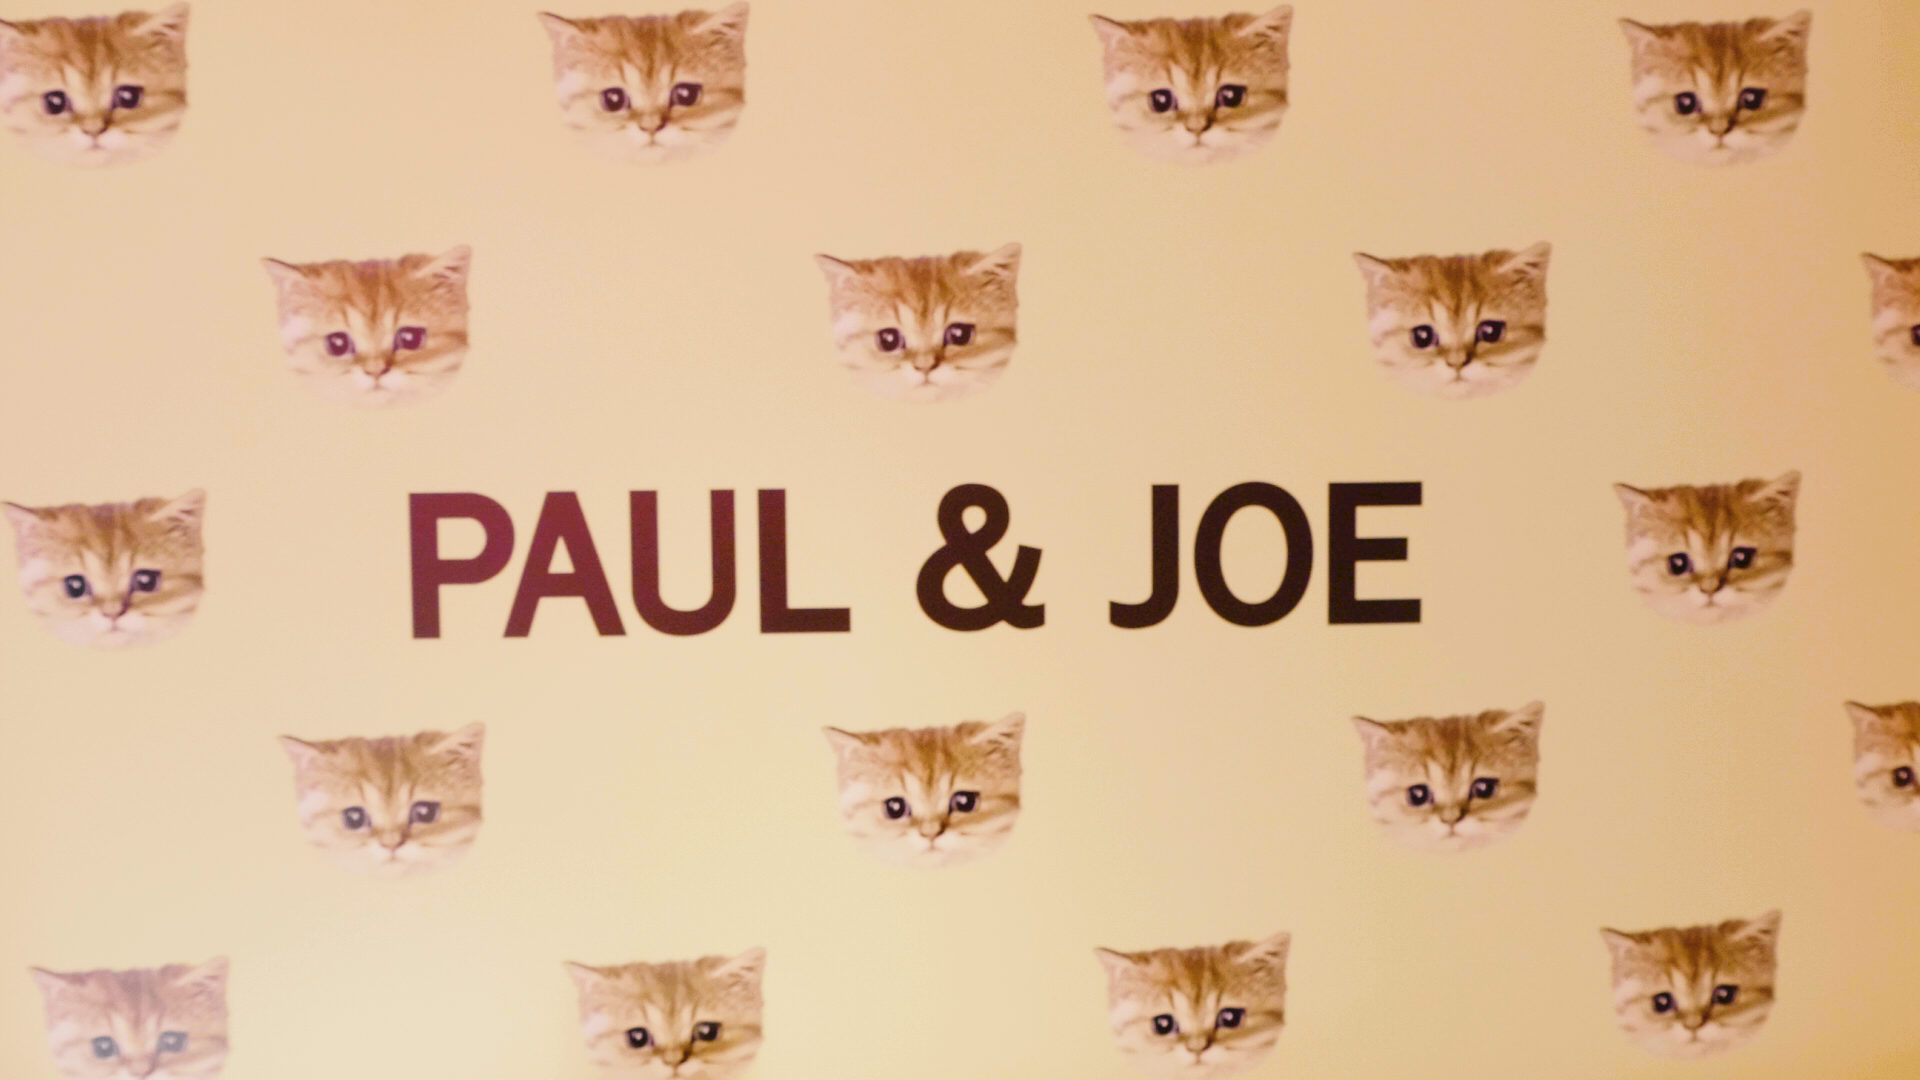 大人気のコスメブランド Paul Joe Beaute 期間限定ポップアップストア Paul Joe Neko Cafe 動画プレスリリース配信サービスのpr Times Tv 新着トレンドを動画でお届け